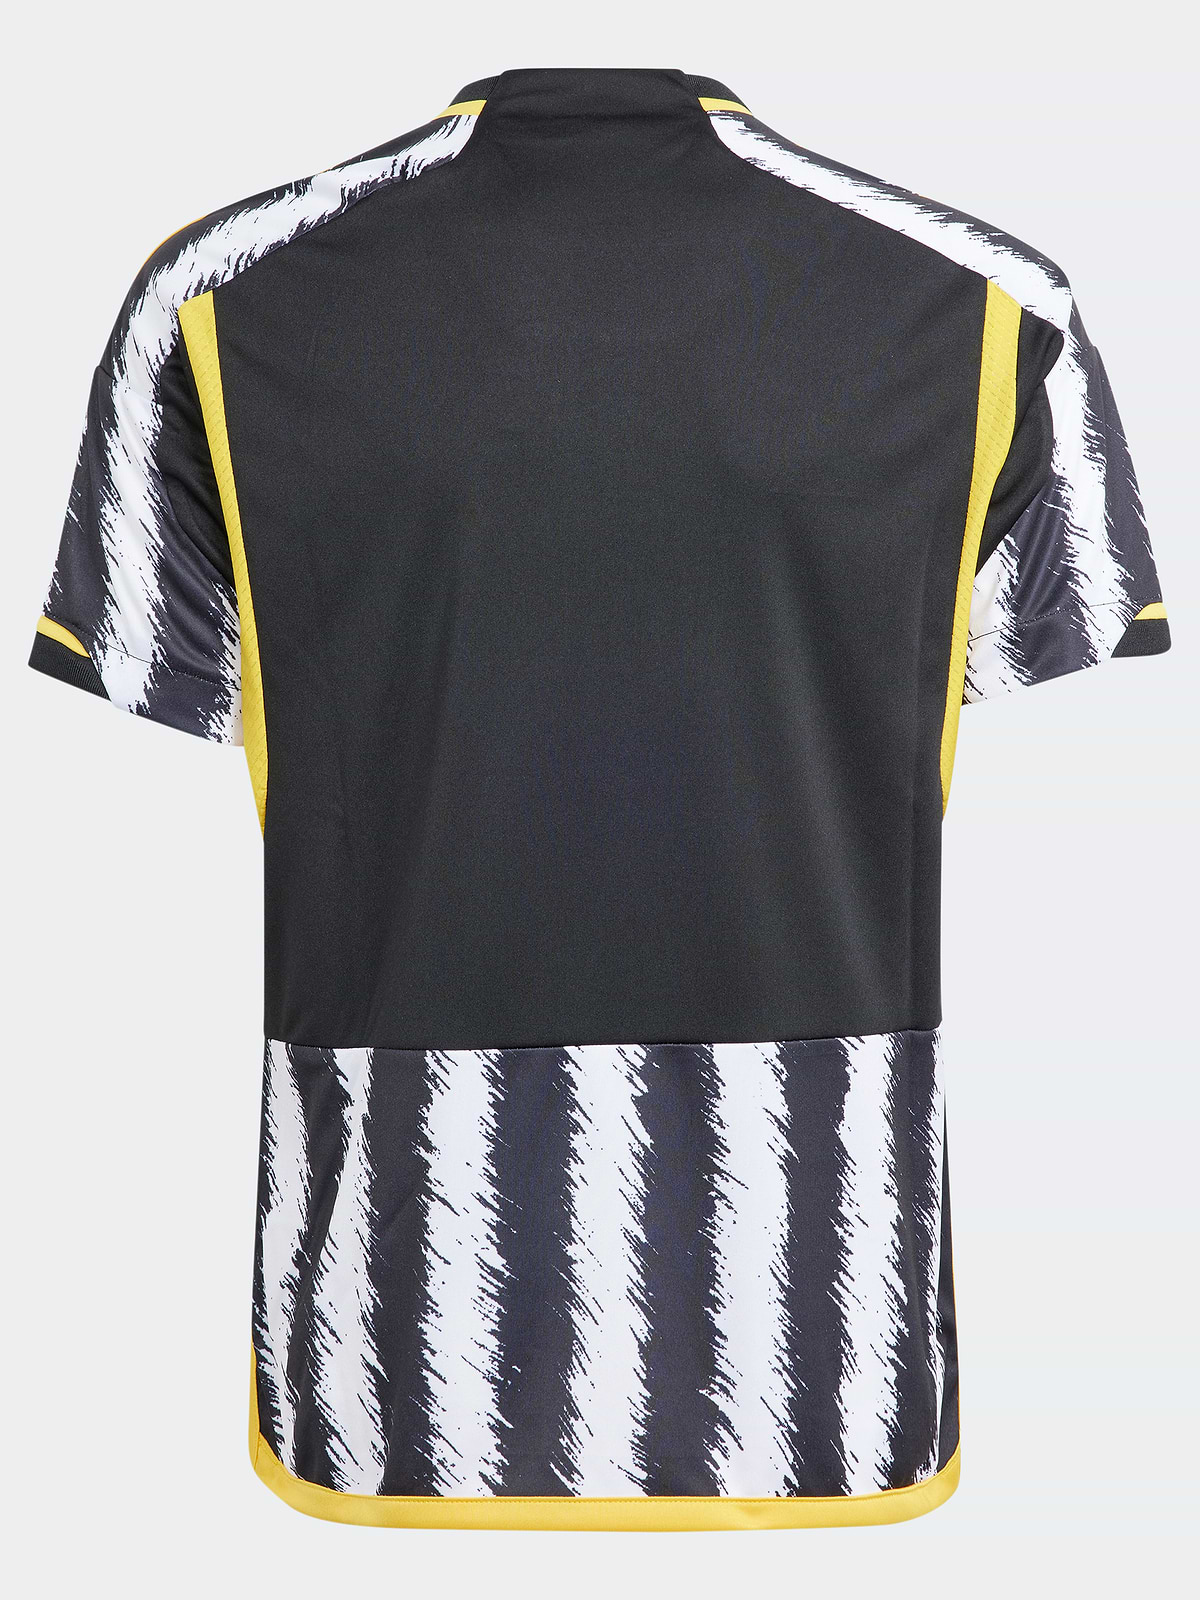 חולצת כדורגל של קבוצת יובנטוס